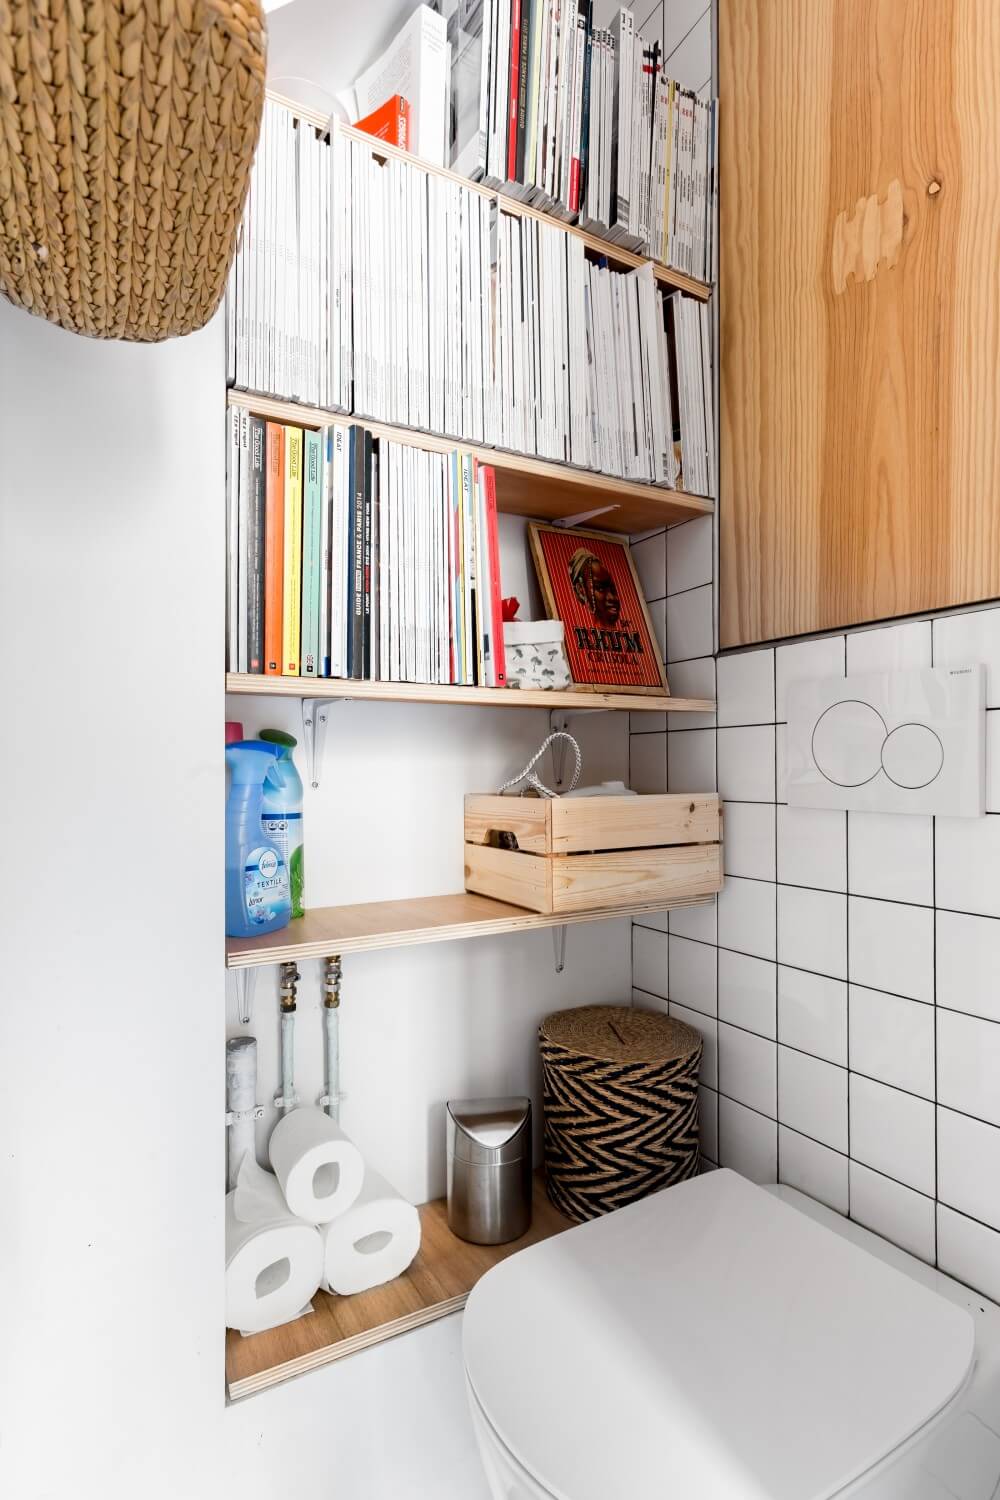 attic apartment paris airbnb nordroom11 A Bright Attic Apartment in Paris That's For Rent on Airbnb